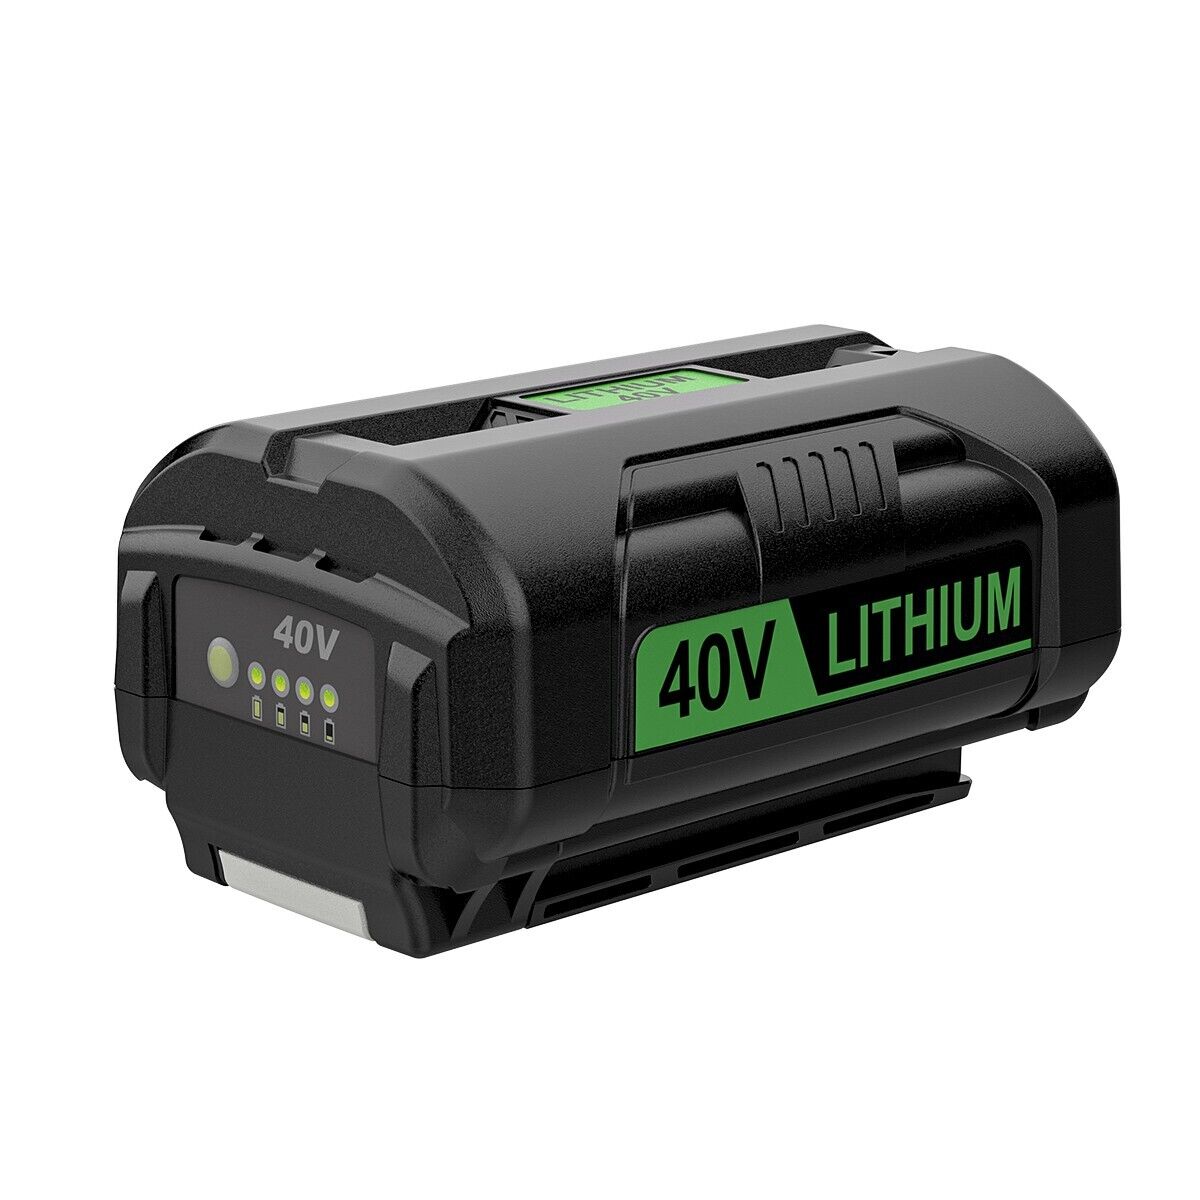 NEW 40V 6.0Ah Battery For Ryobi High Capacity 6000 OP4050 OP40602 OP40261 OP4060